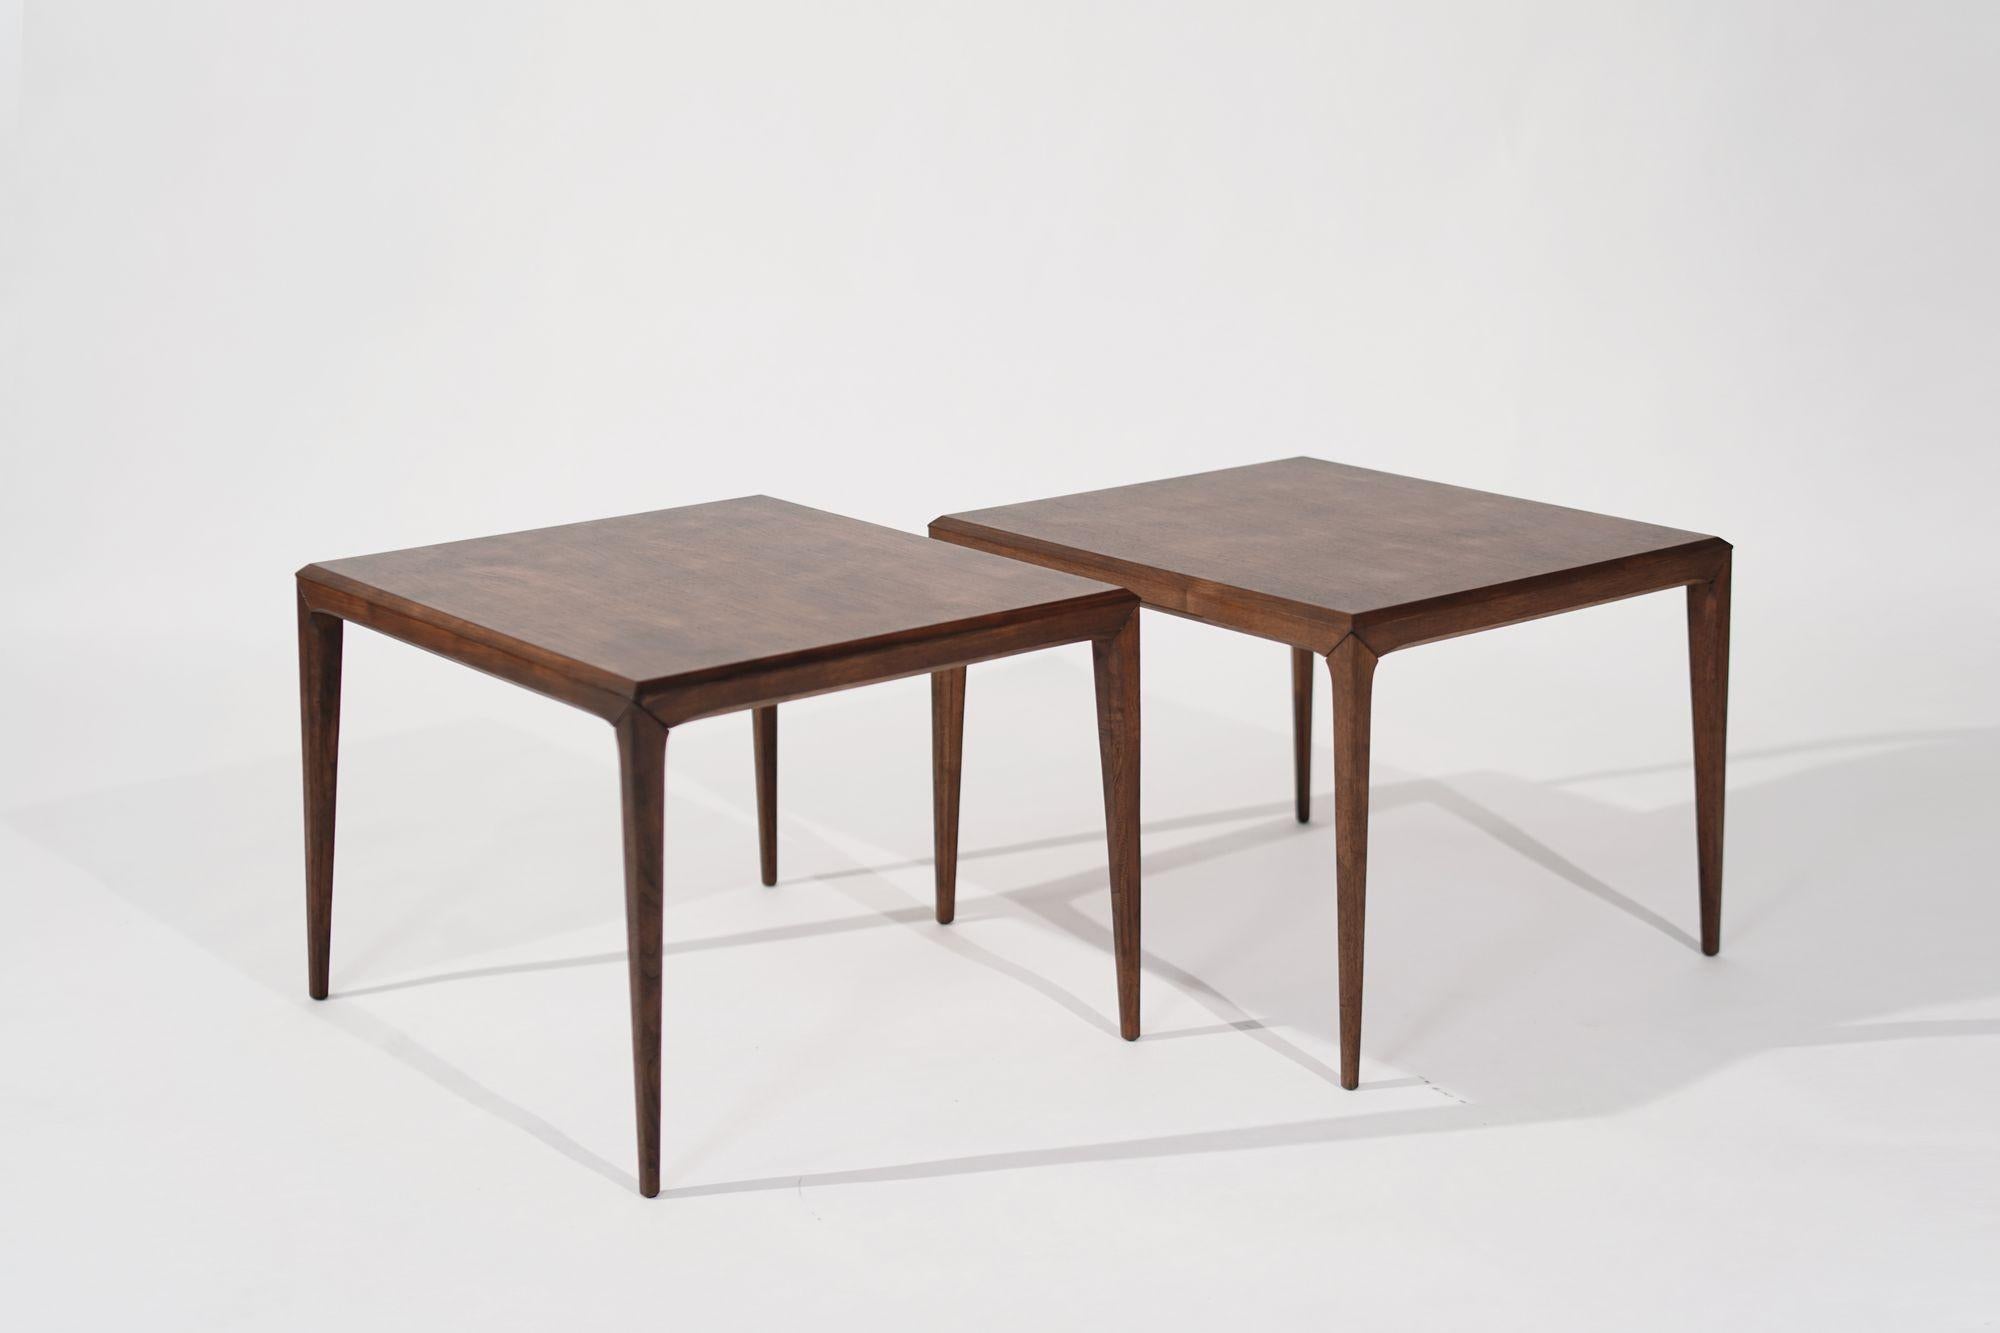 Cet ensemble de tables d'appoint en teck de Johannes Andersen pour CIRCA Silkeborg, Danemark, vers les années 1950, embellit votre espace. Entièrement restaurées pour retrouver leur élégance d'origine, ces tables présentent l'attrait intemporel du